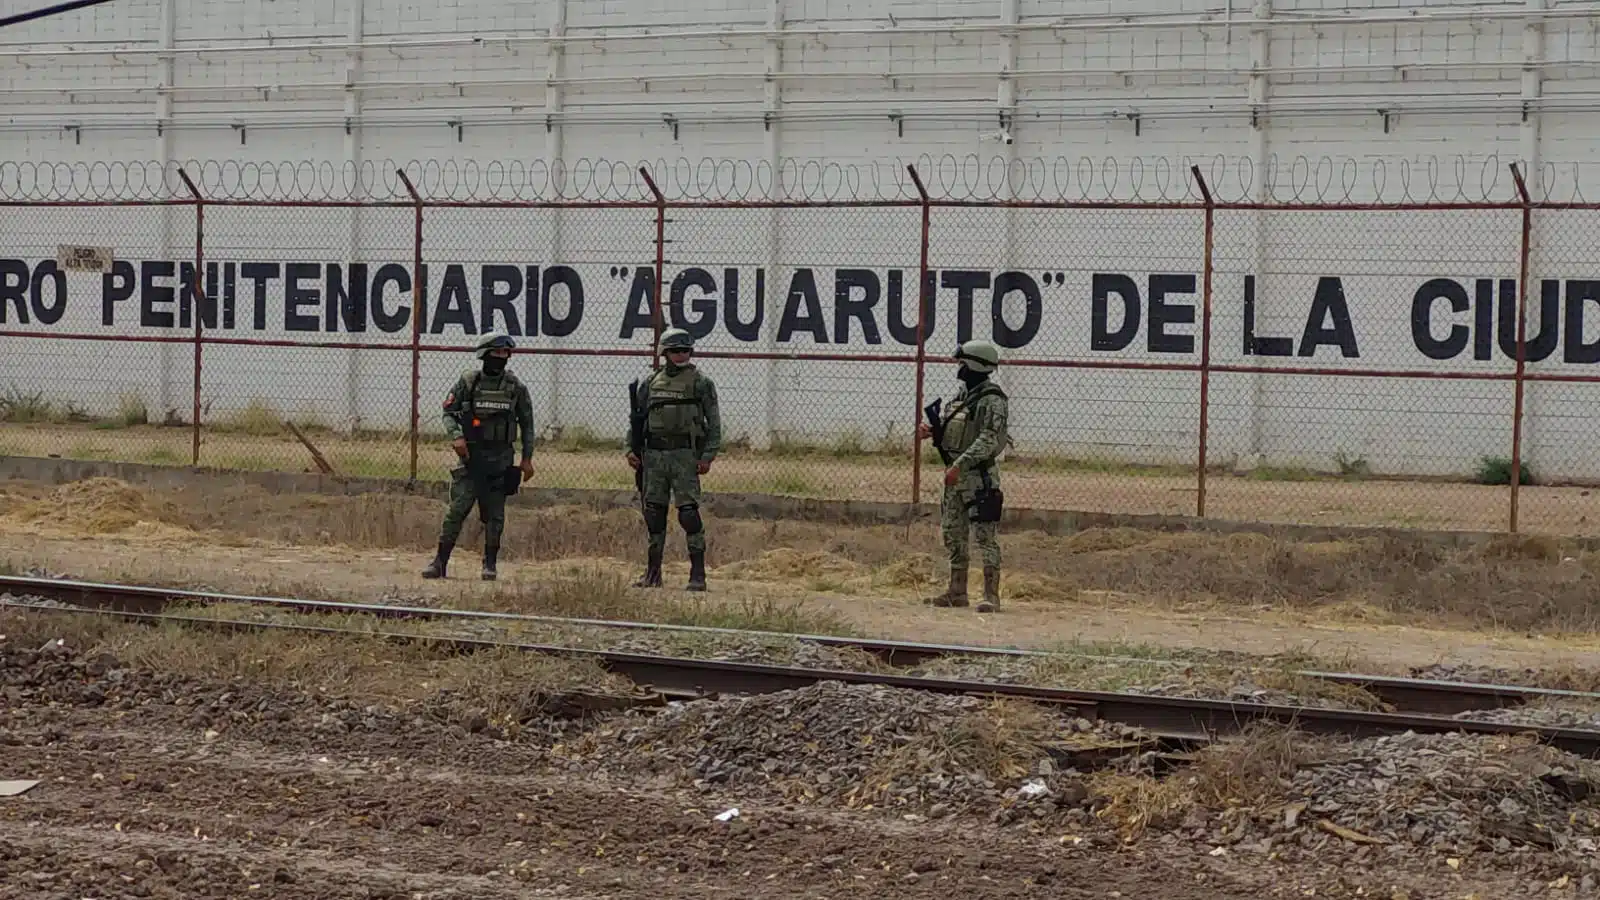 Centro Penitenciario de Aguaruto